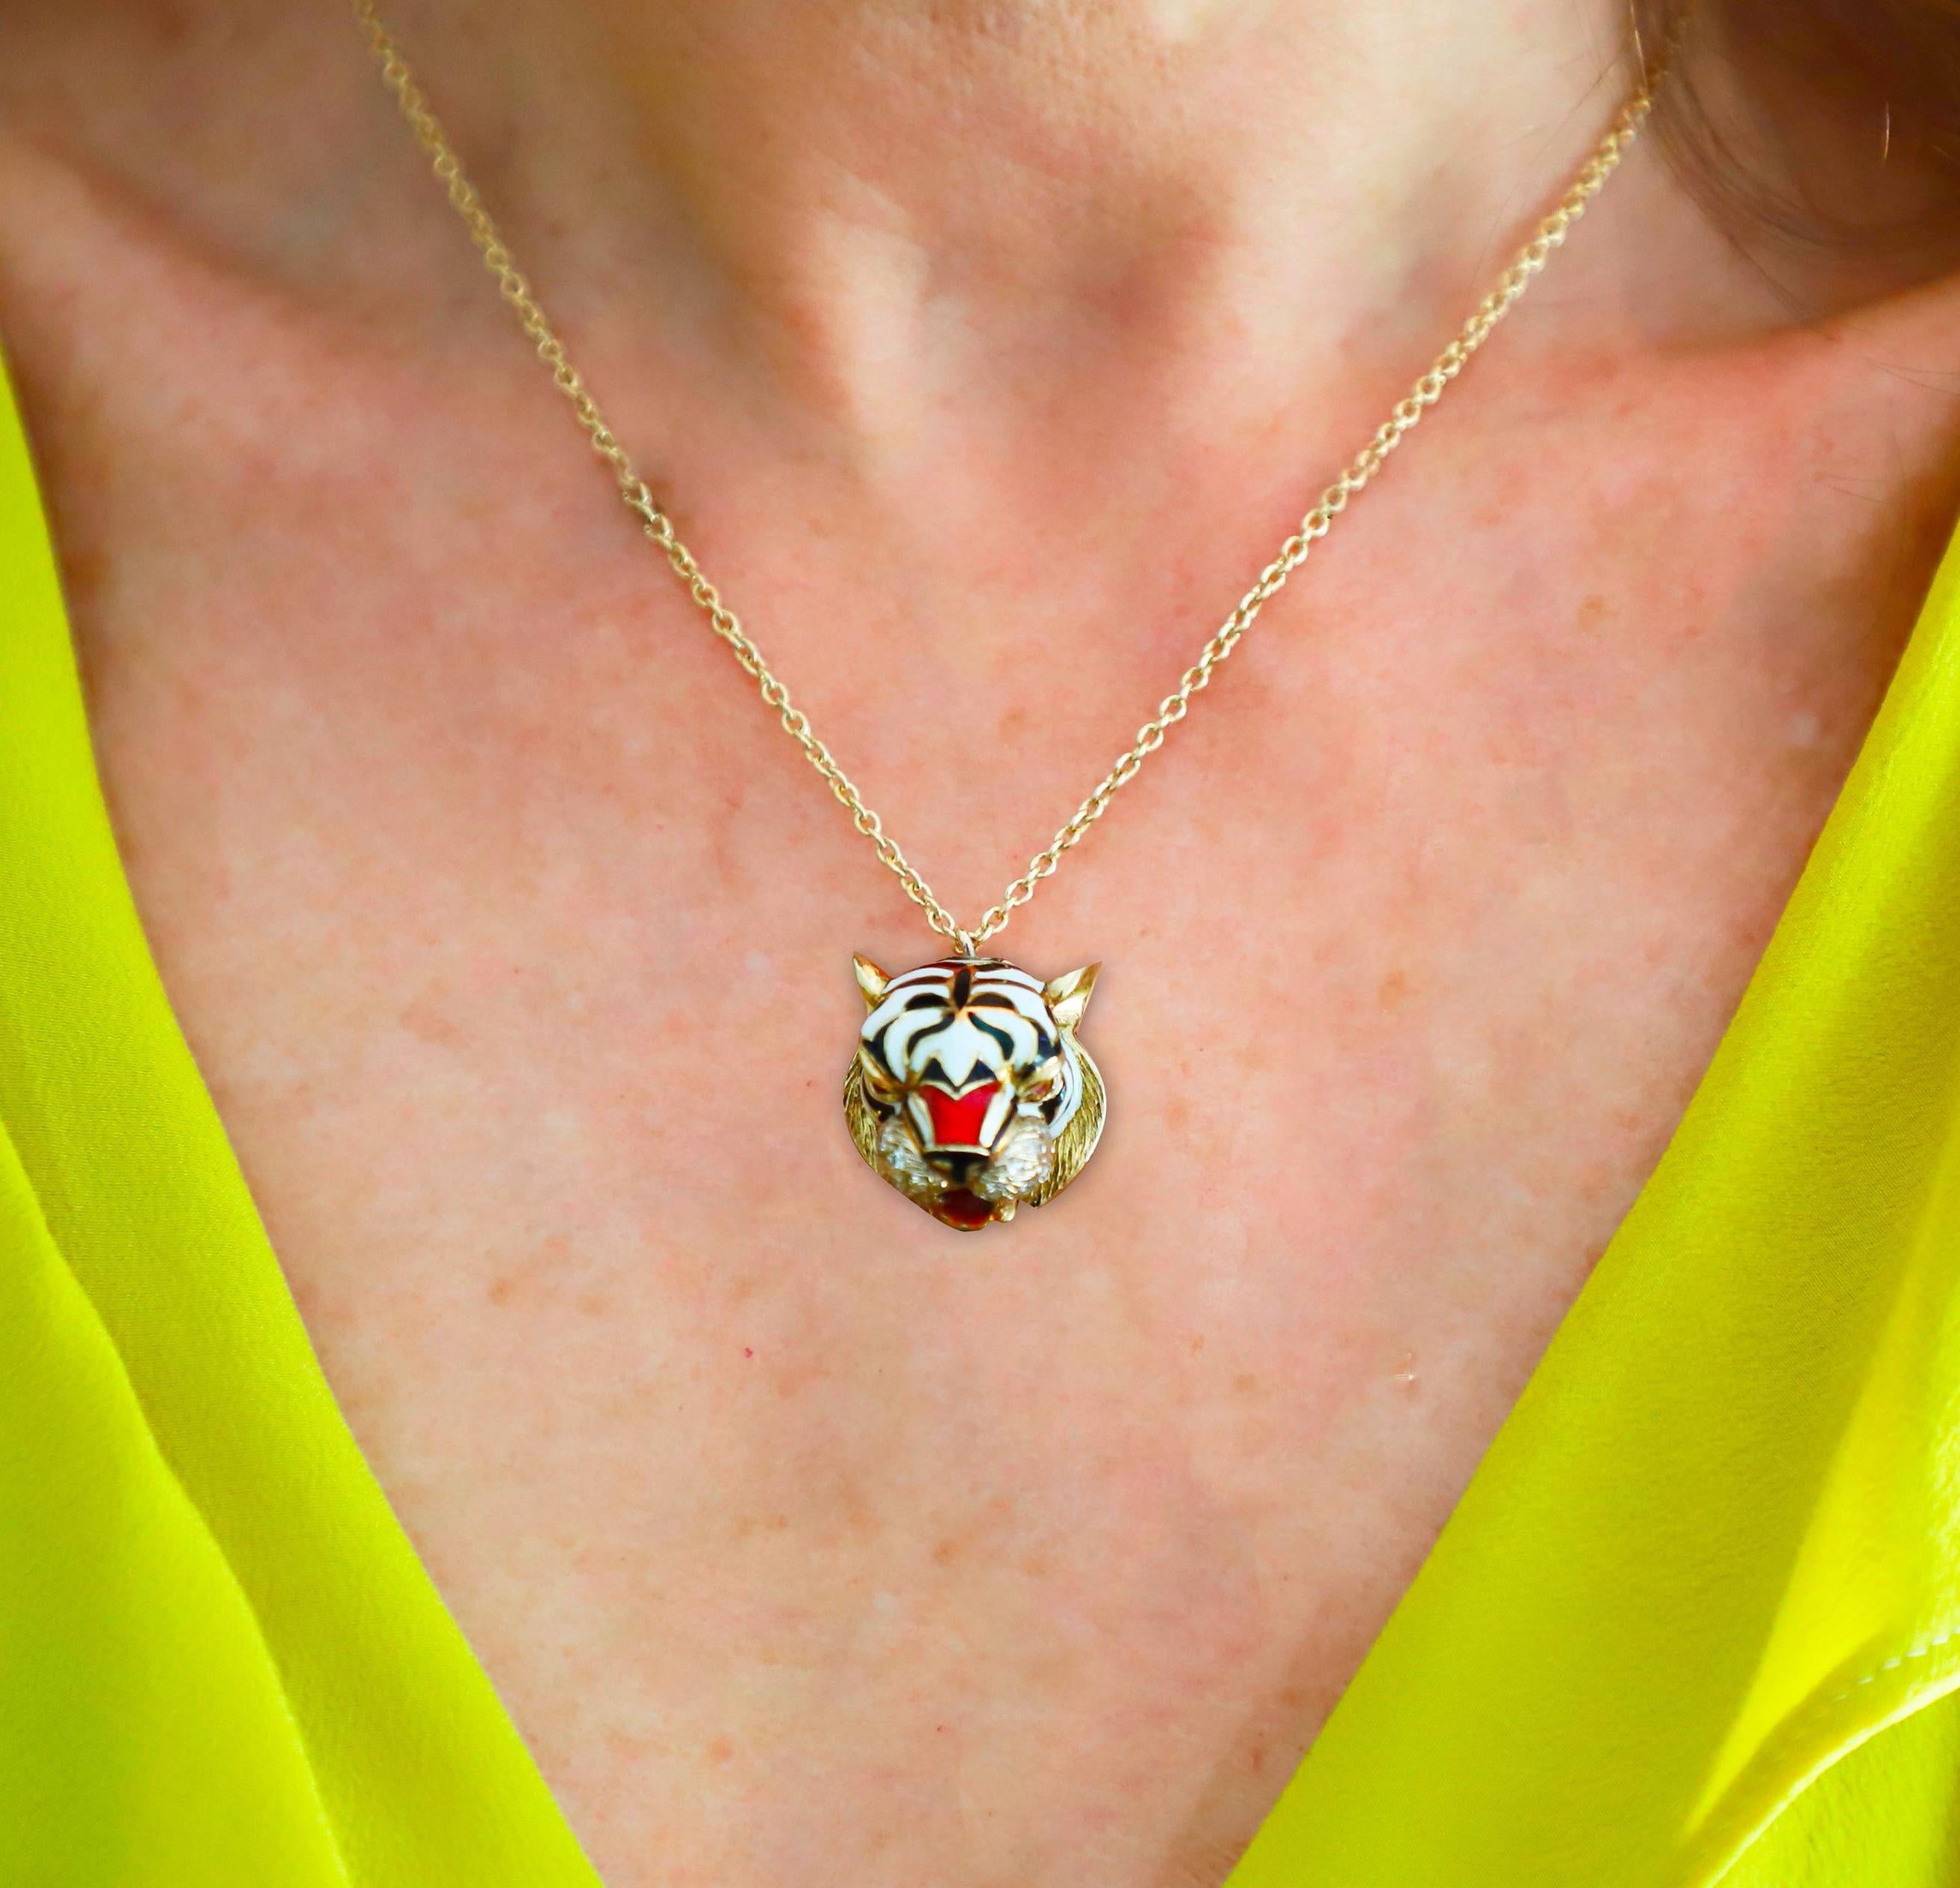 Élevez votre style avec le remarquable collier à pendentifs en forme de tigre de Rossella Ugolini, incarnation de la force et de l'art. Fabriqué en or jaune 18 carats, ce pendentif est orné d'yeux en rubis de 0,06 carat, d'une moustache en diamant